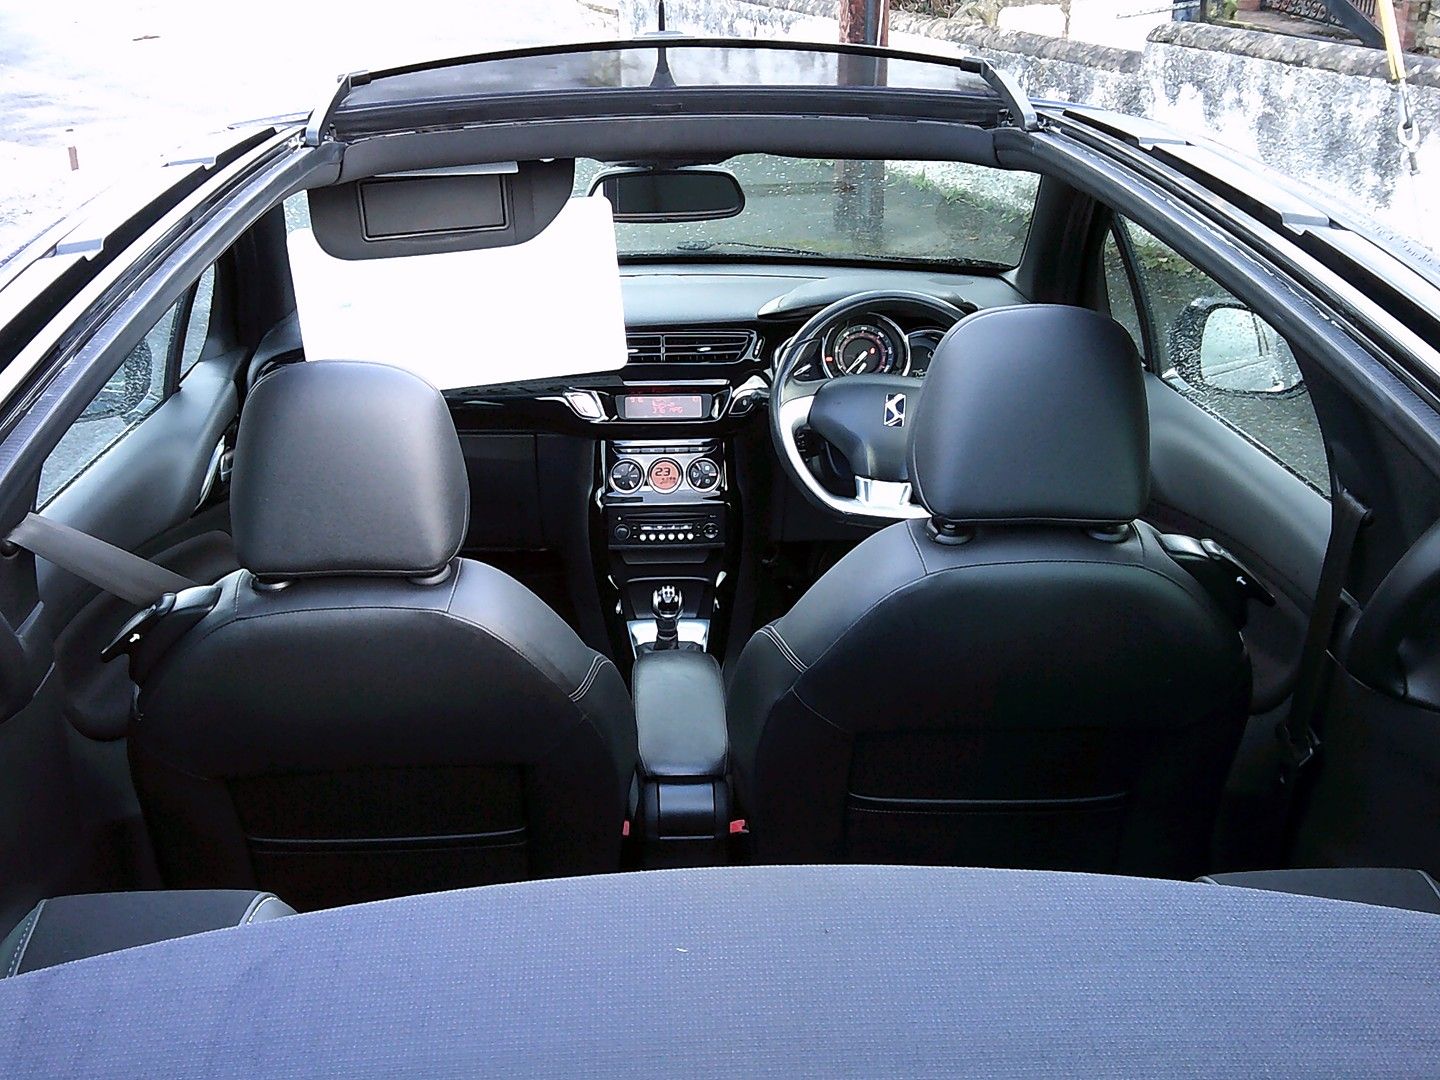 CITROEN DS3 Cabrio VTi 120 DStyle (2013) - Picture 21